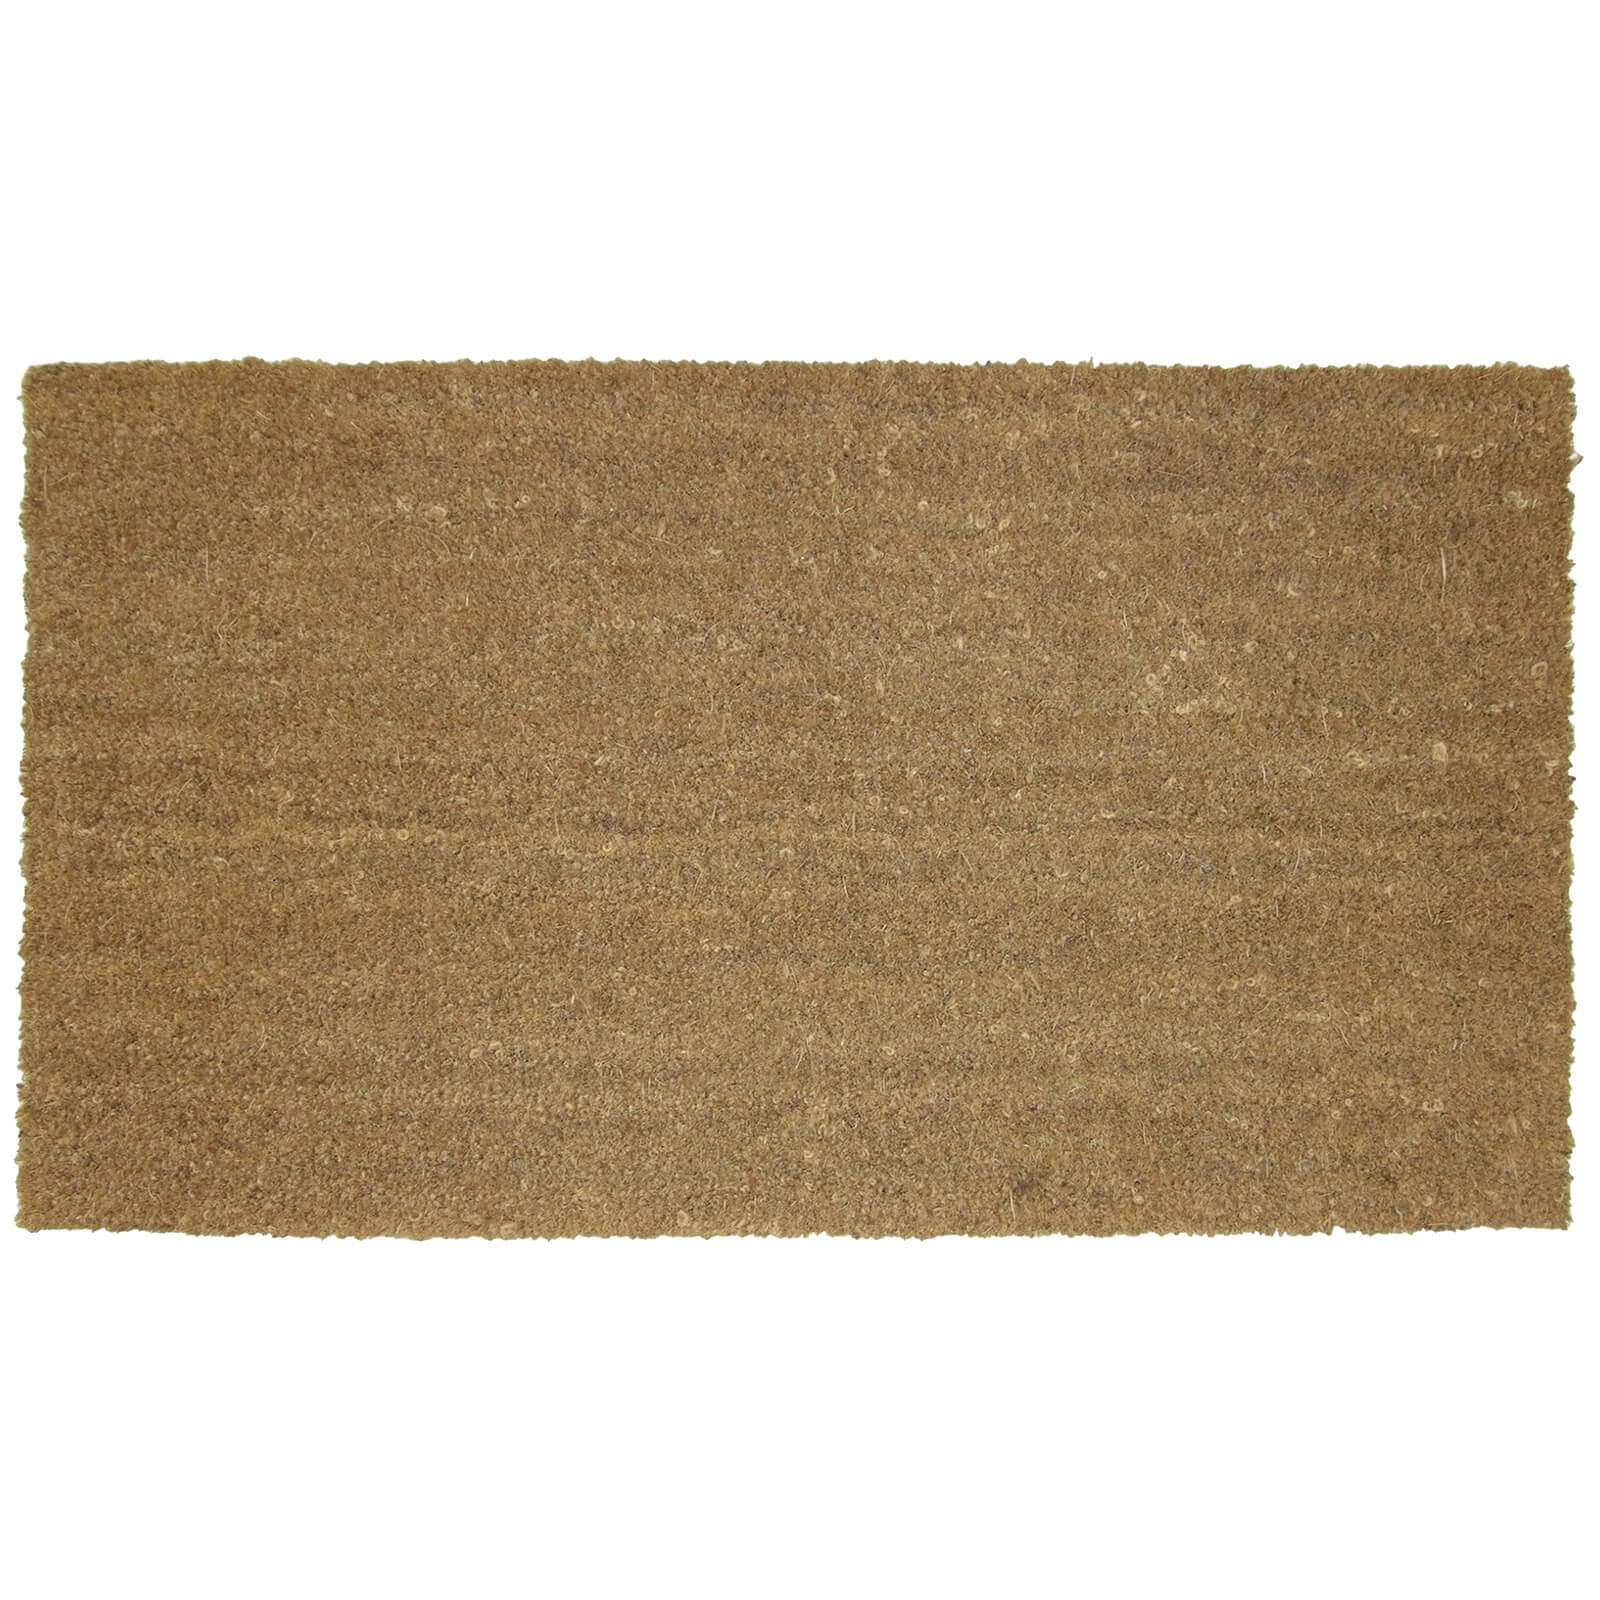 Cece Natural Coir Doormat